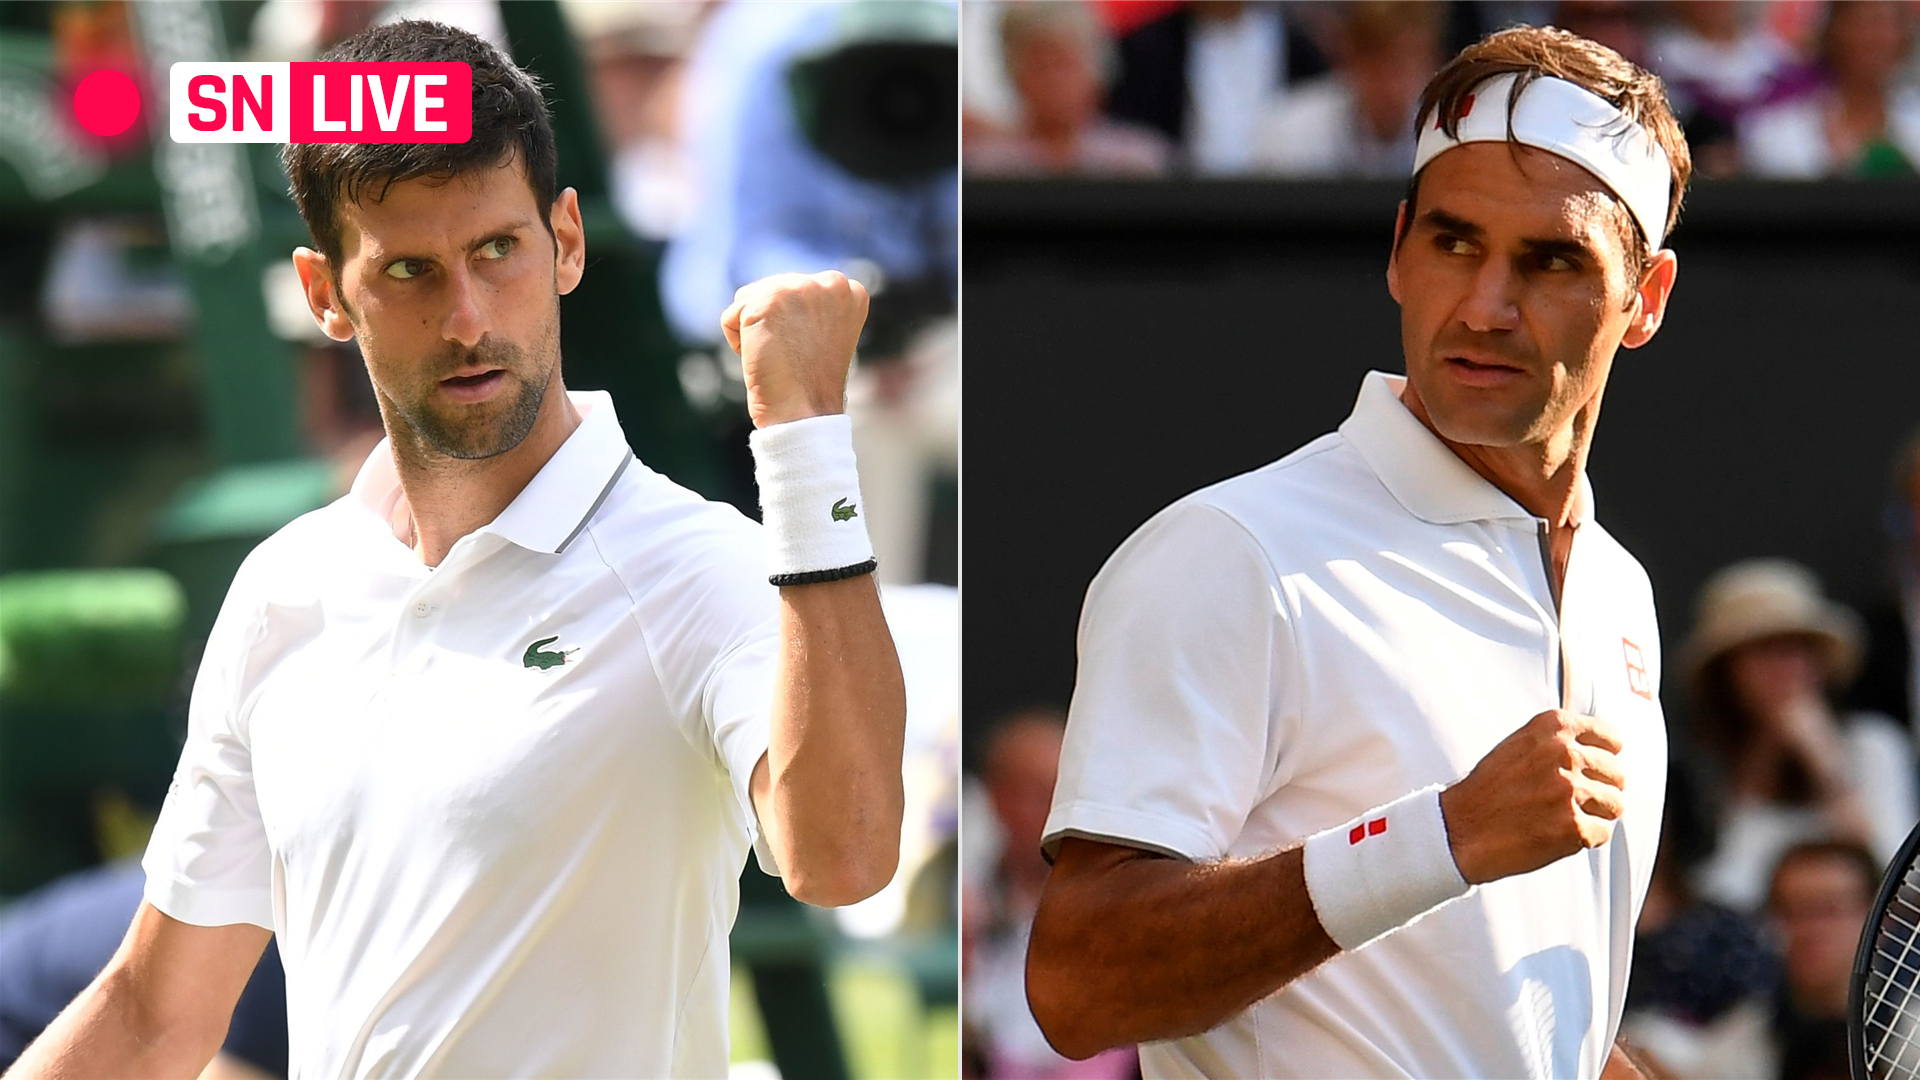 Novak Djokovic vs. Roger Federer: Live score, updates, highlights from